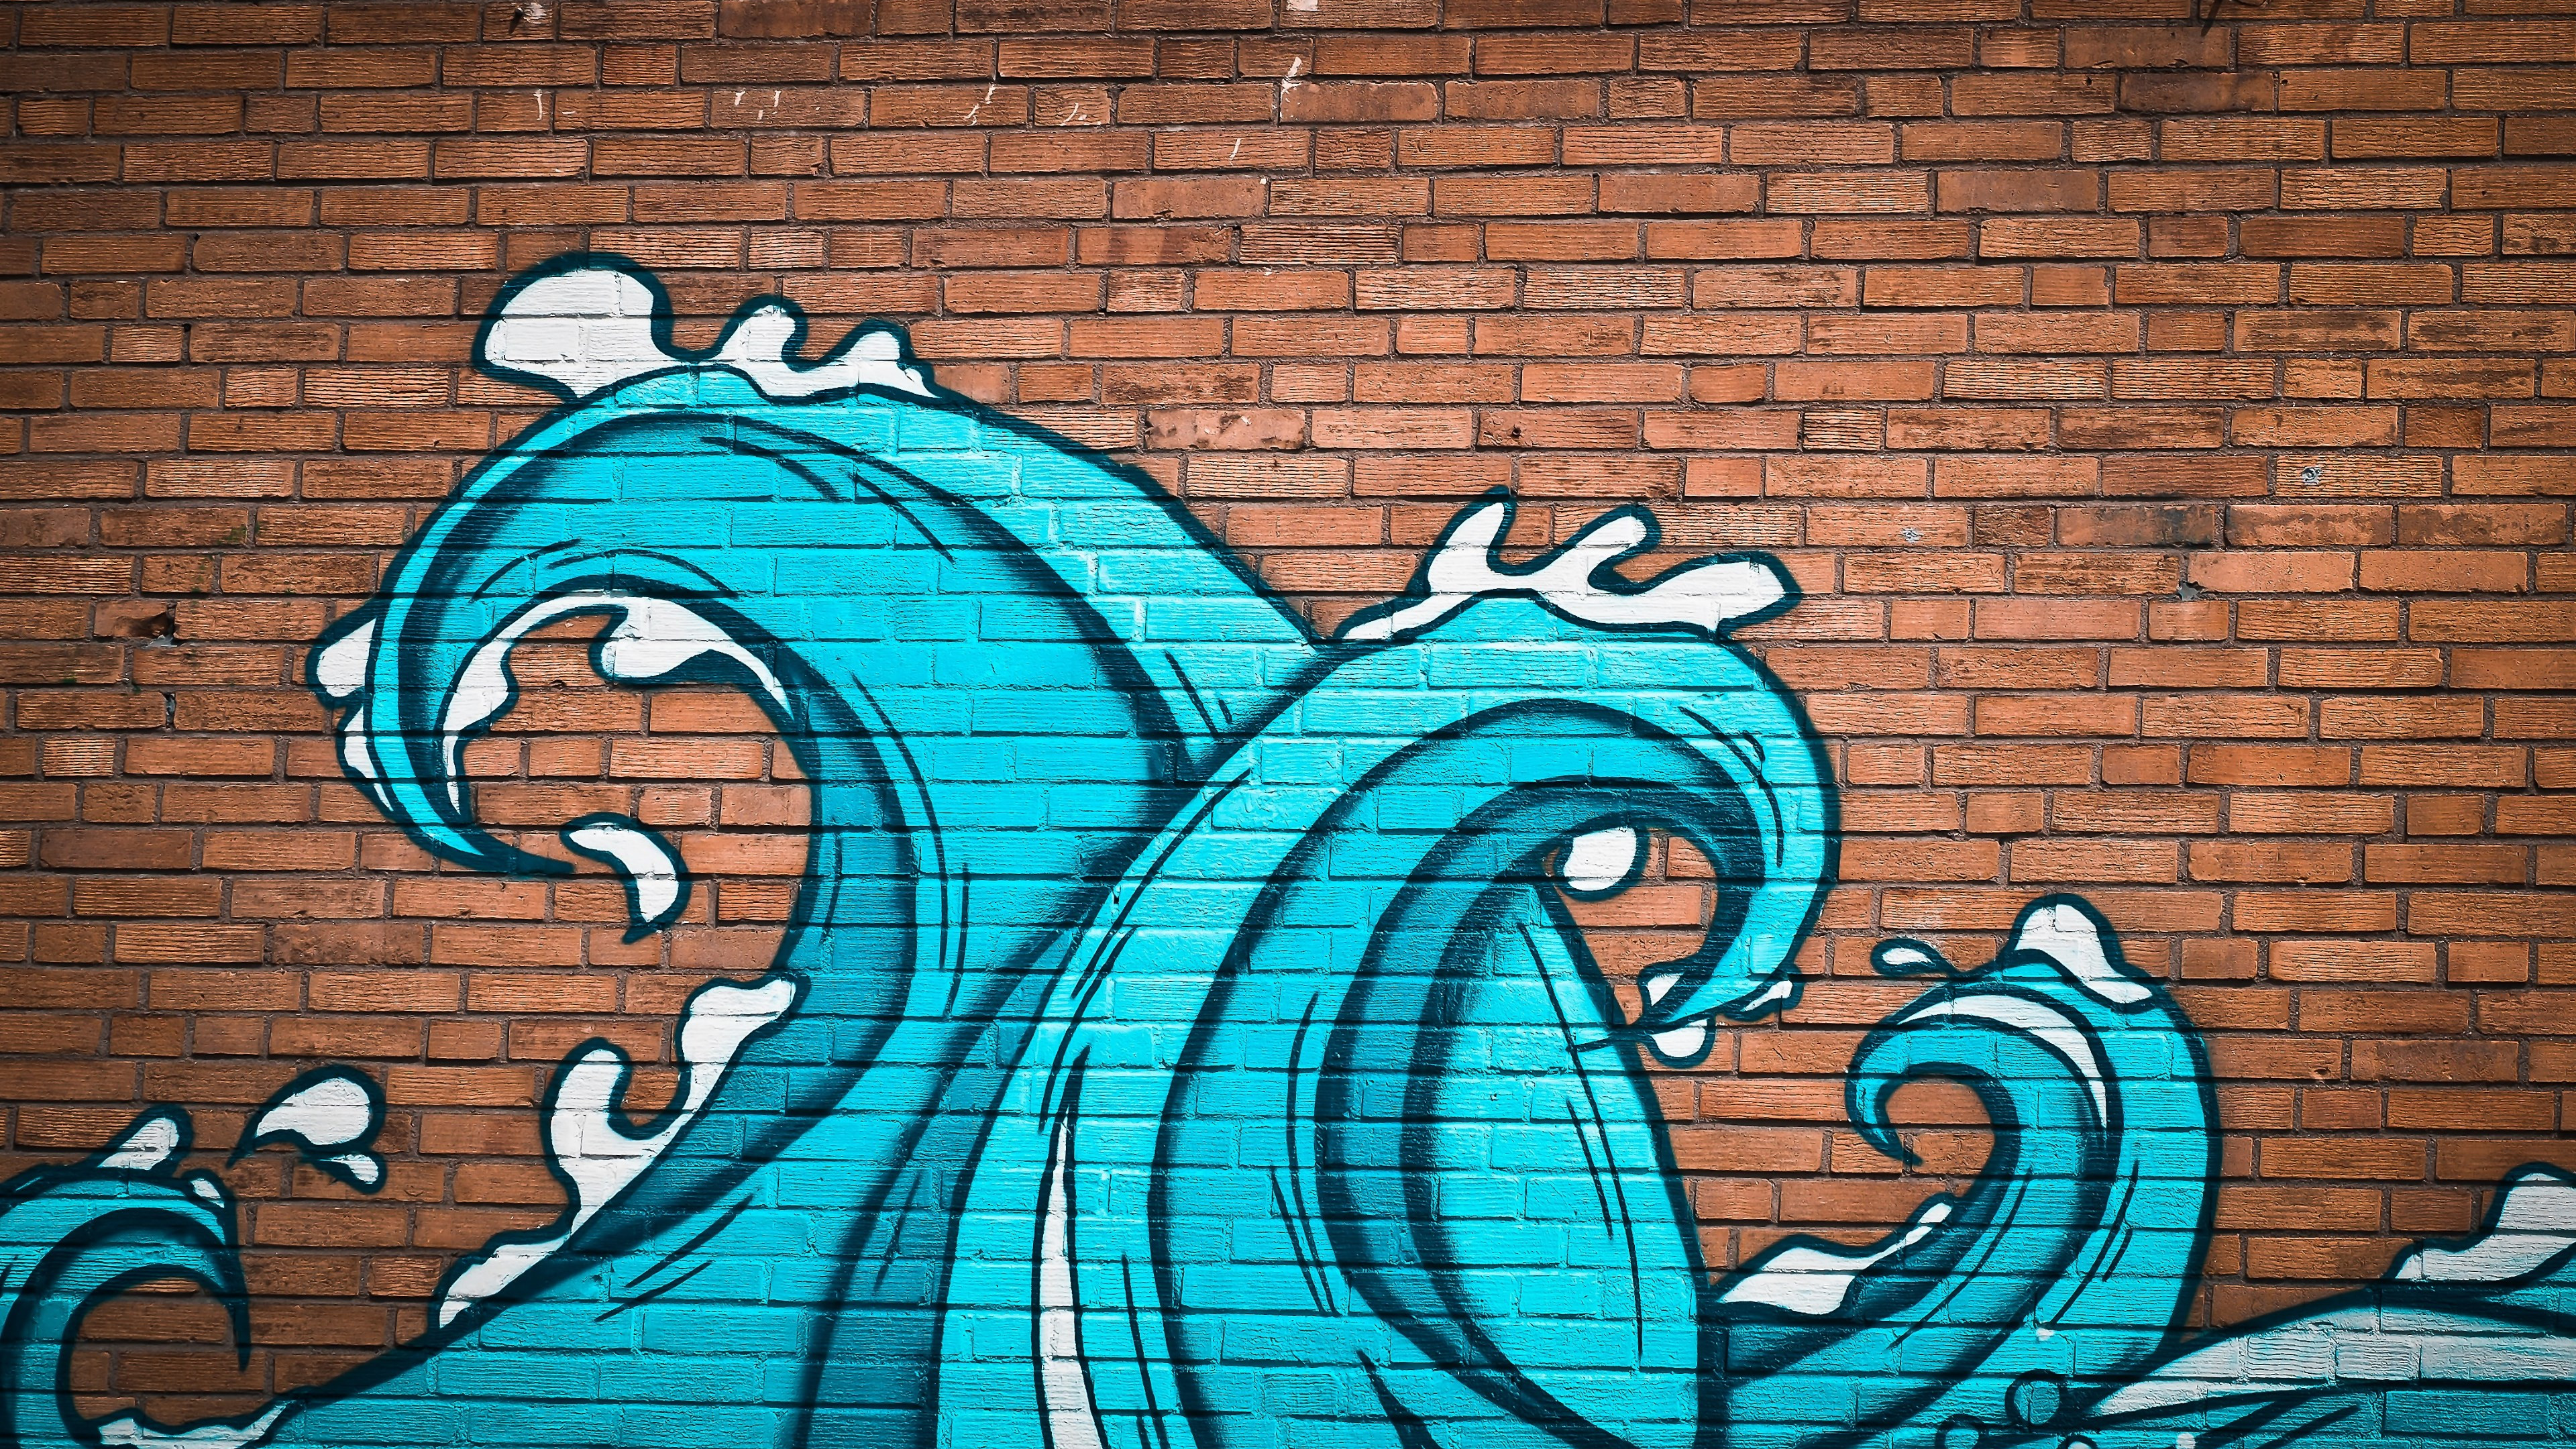 Graffiti waves on brick wall wallpaper 3840x2160